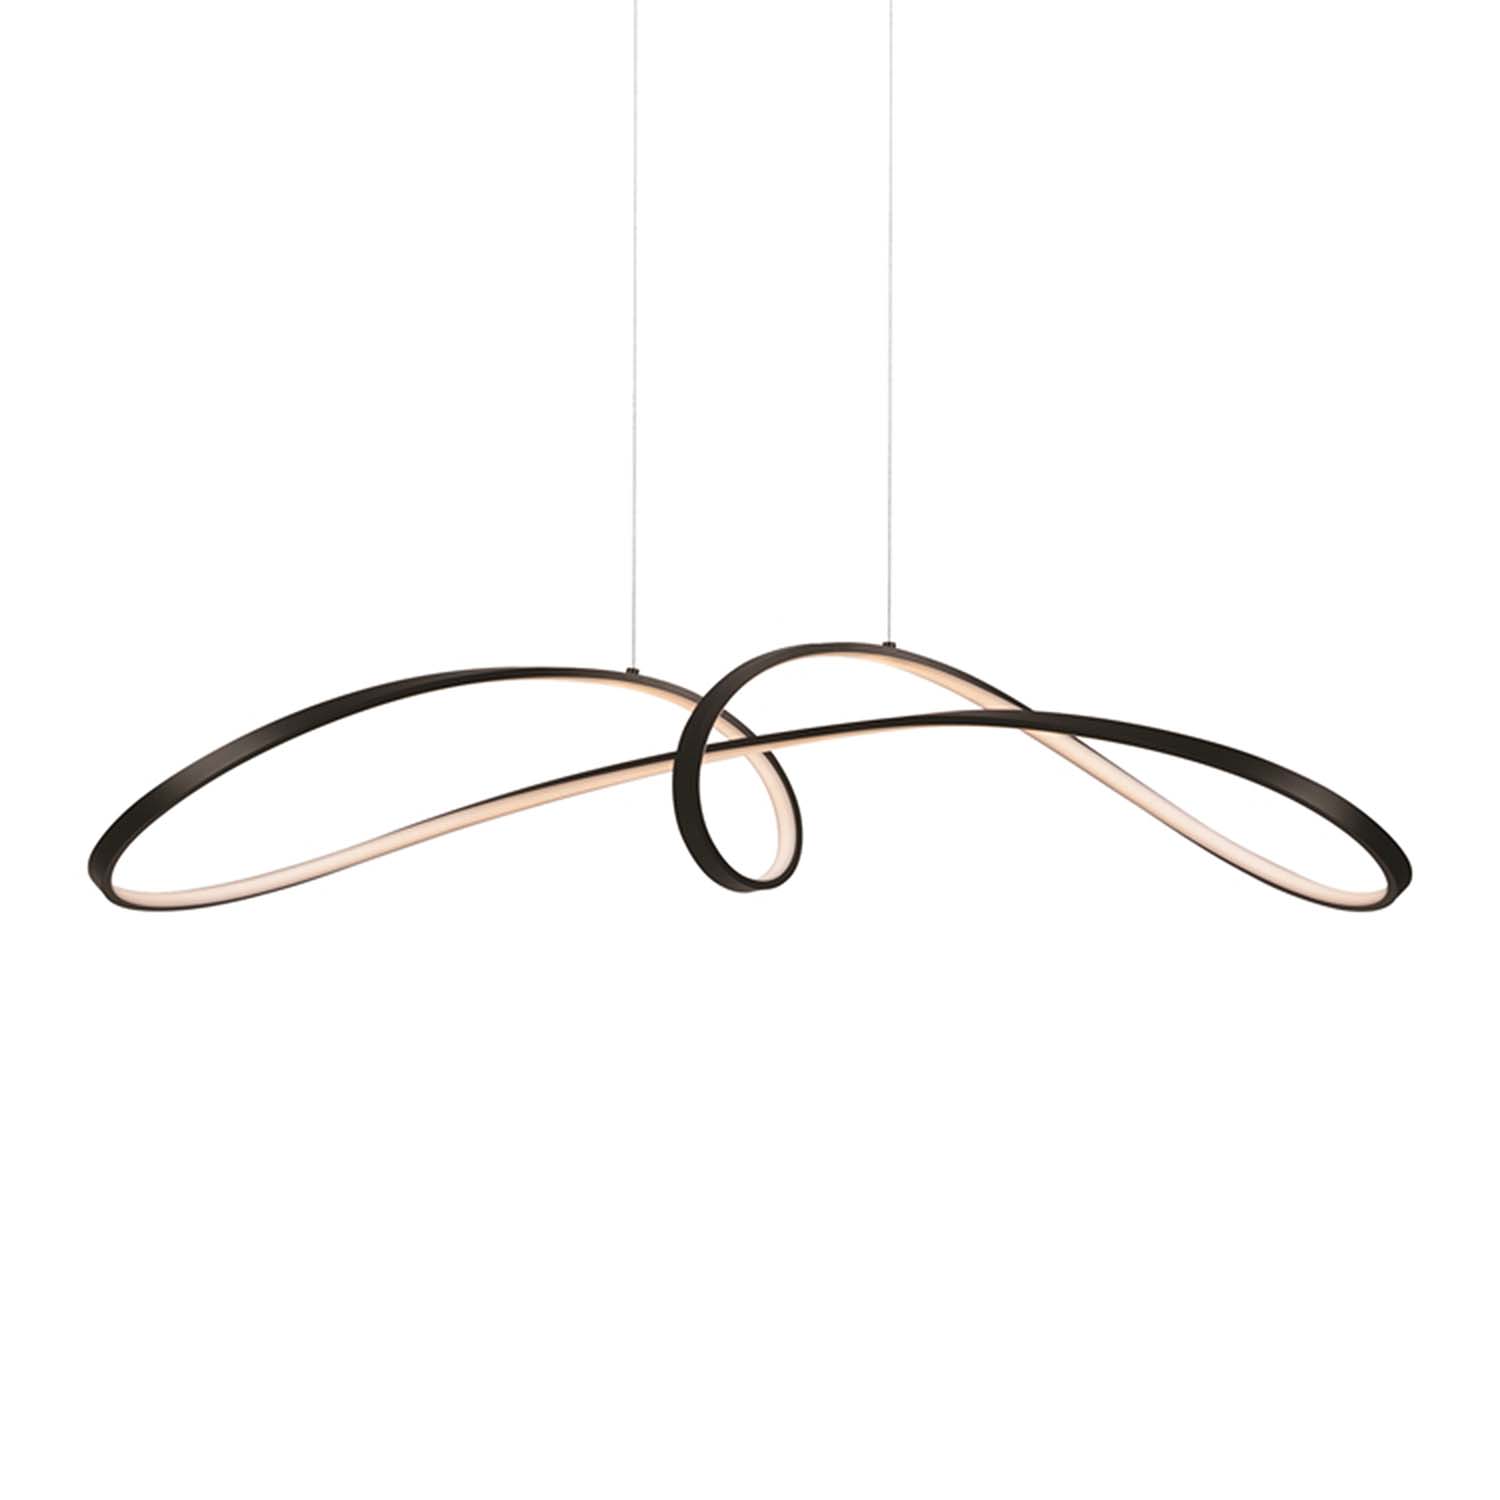 CURVE – Integrierte LED-Knotenaufhängung, goldenes oder schwarzes Design